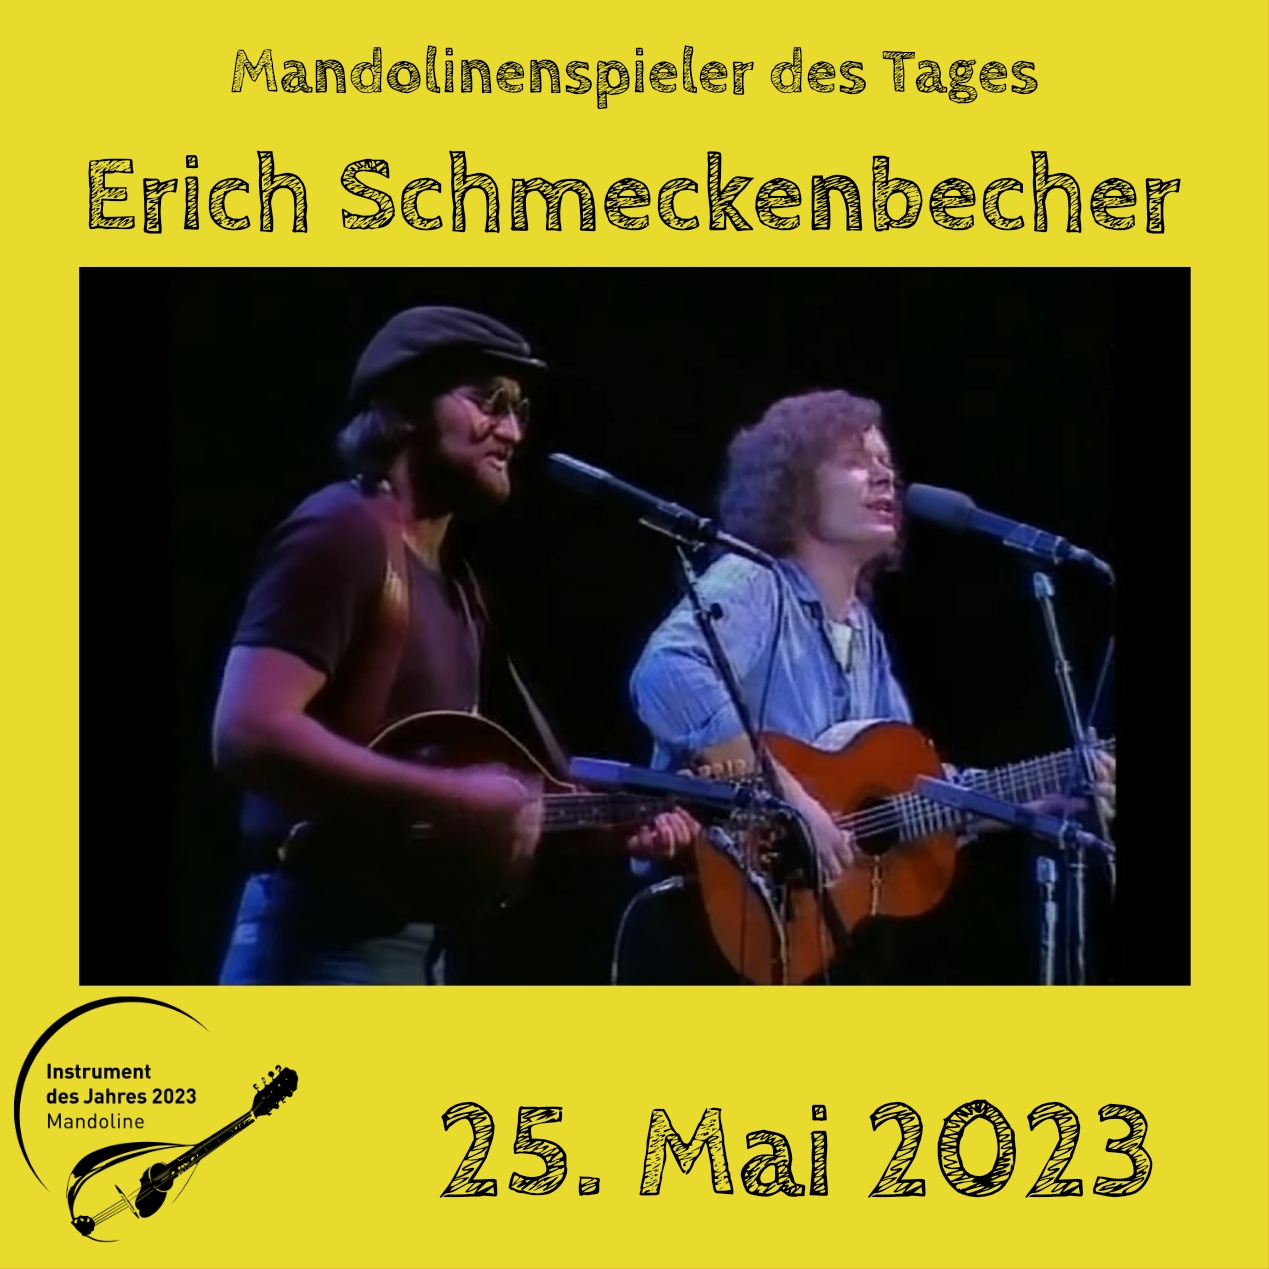 Erich Schmeckenbecher Mandoline Instrument des Jahres 2023 Mandolinenspieler Mandolinenspielerin des Tages